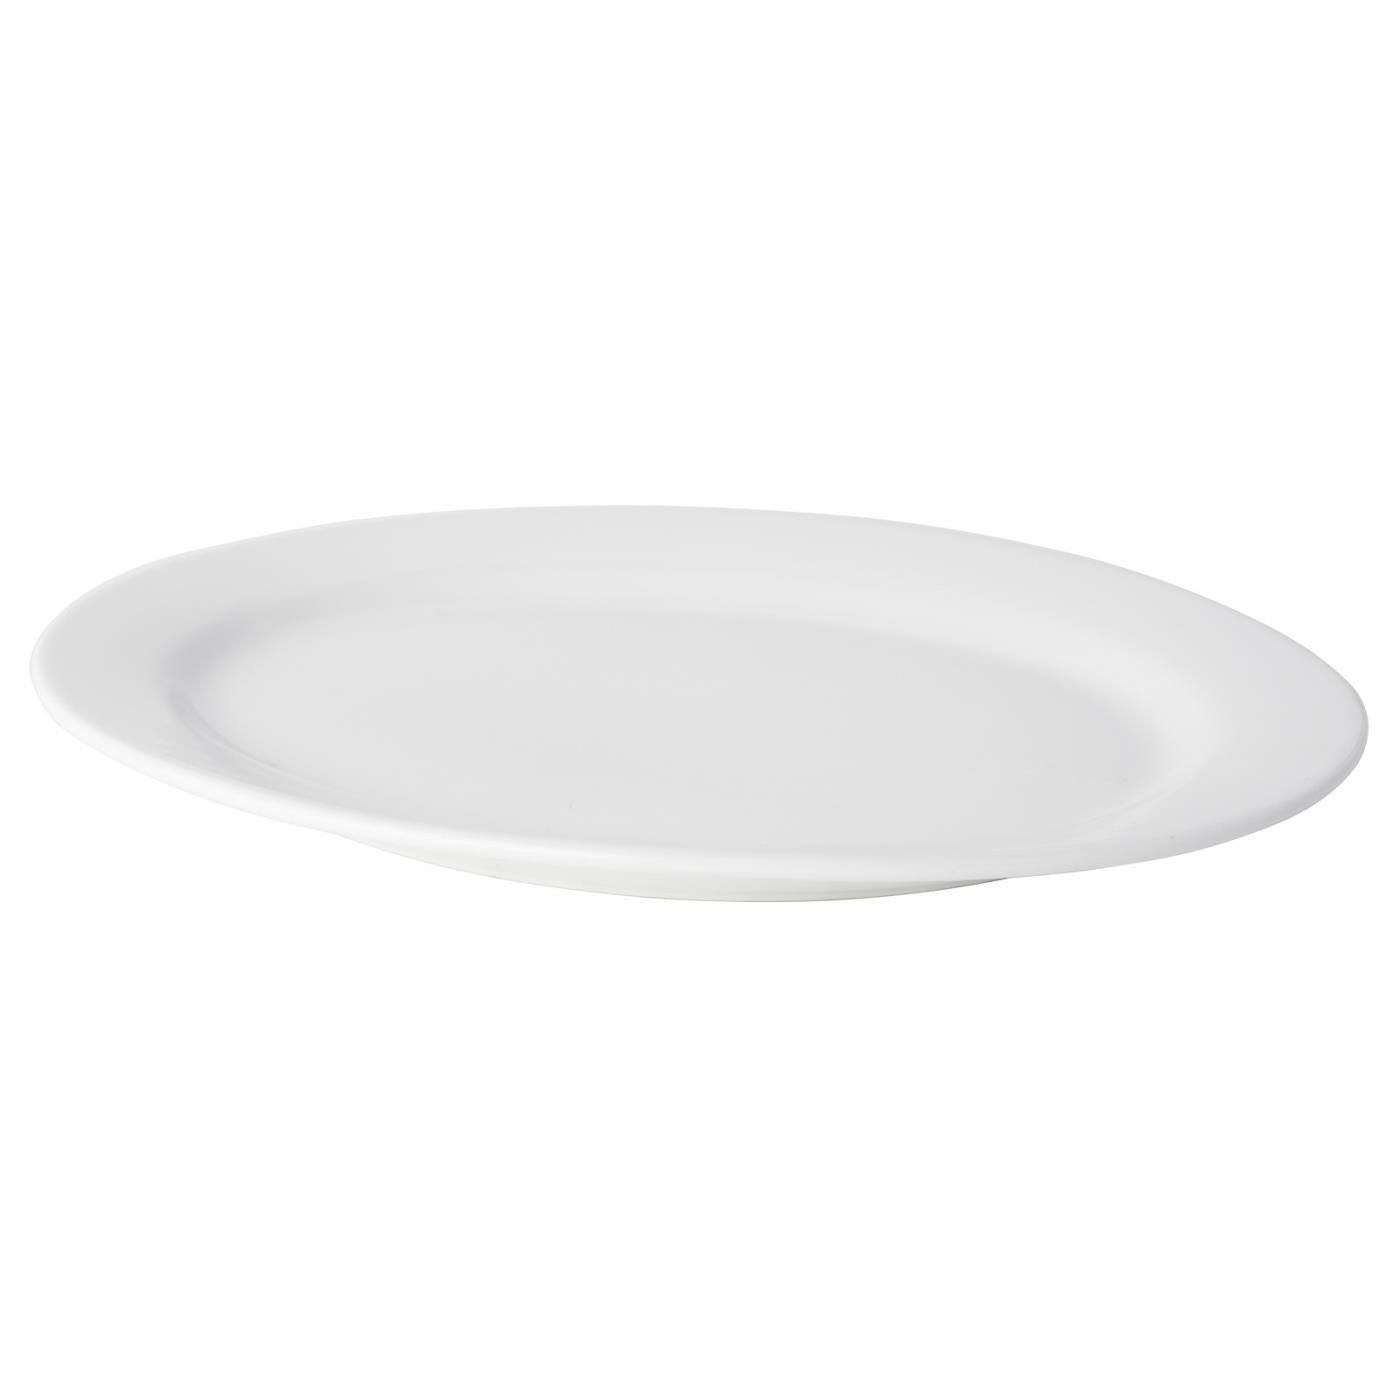 White Ceramic Oval Platter - 22"